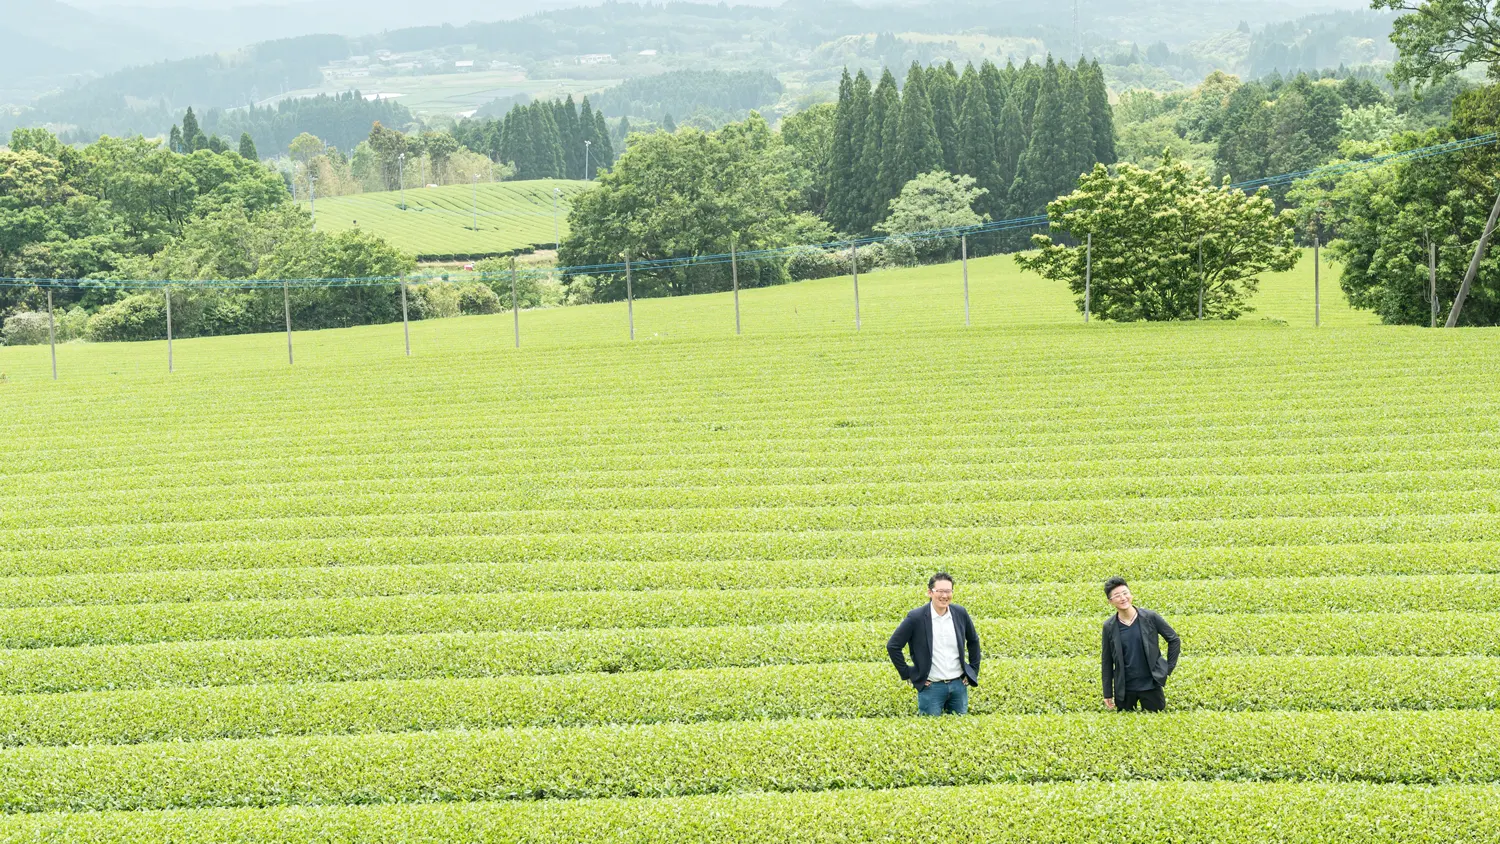 鹿児島県の茶畑。高い木に囲まれた茶畑は飛散農薬からも守られています。